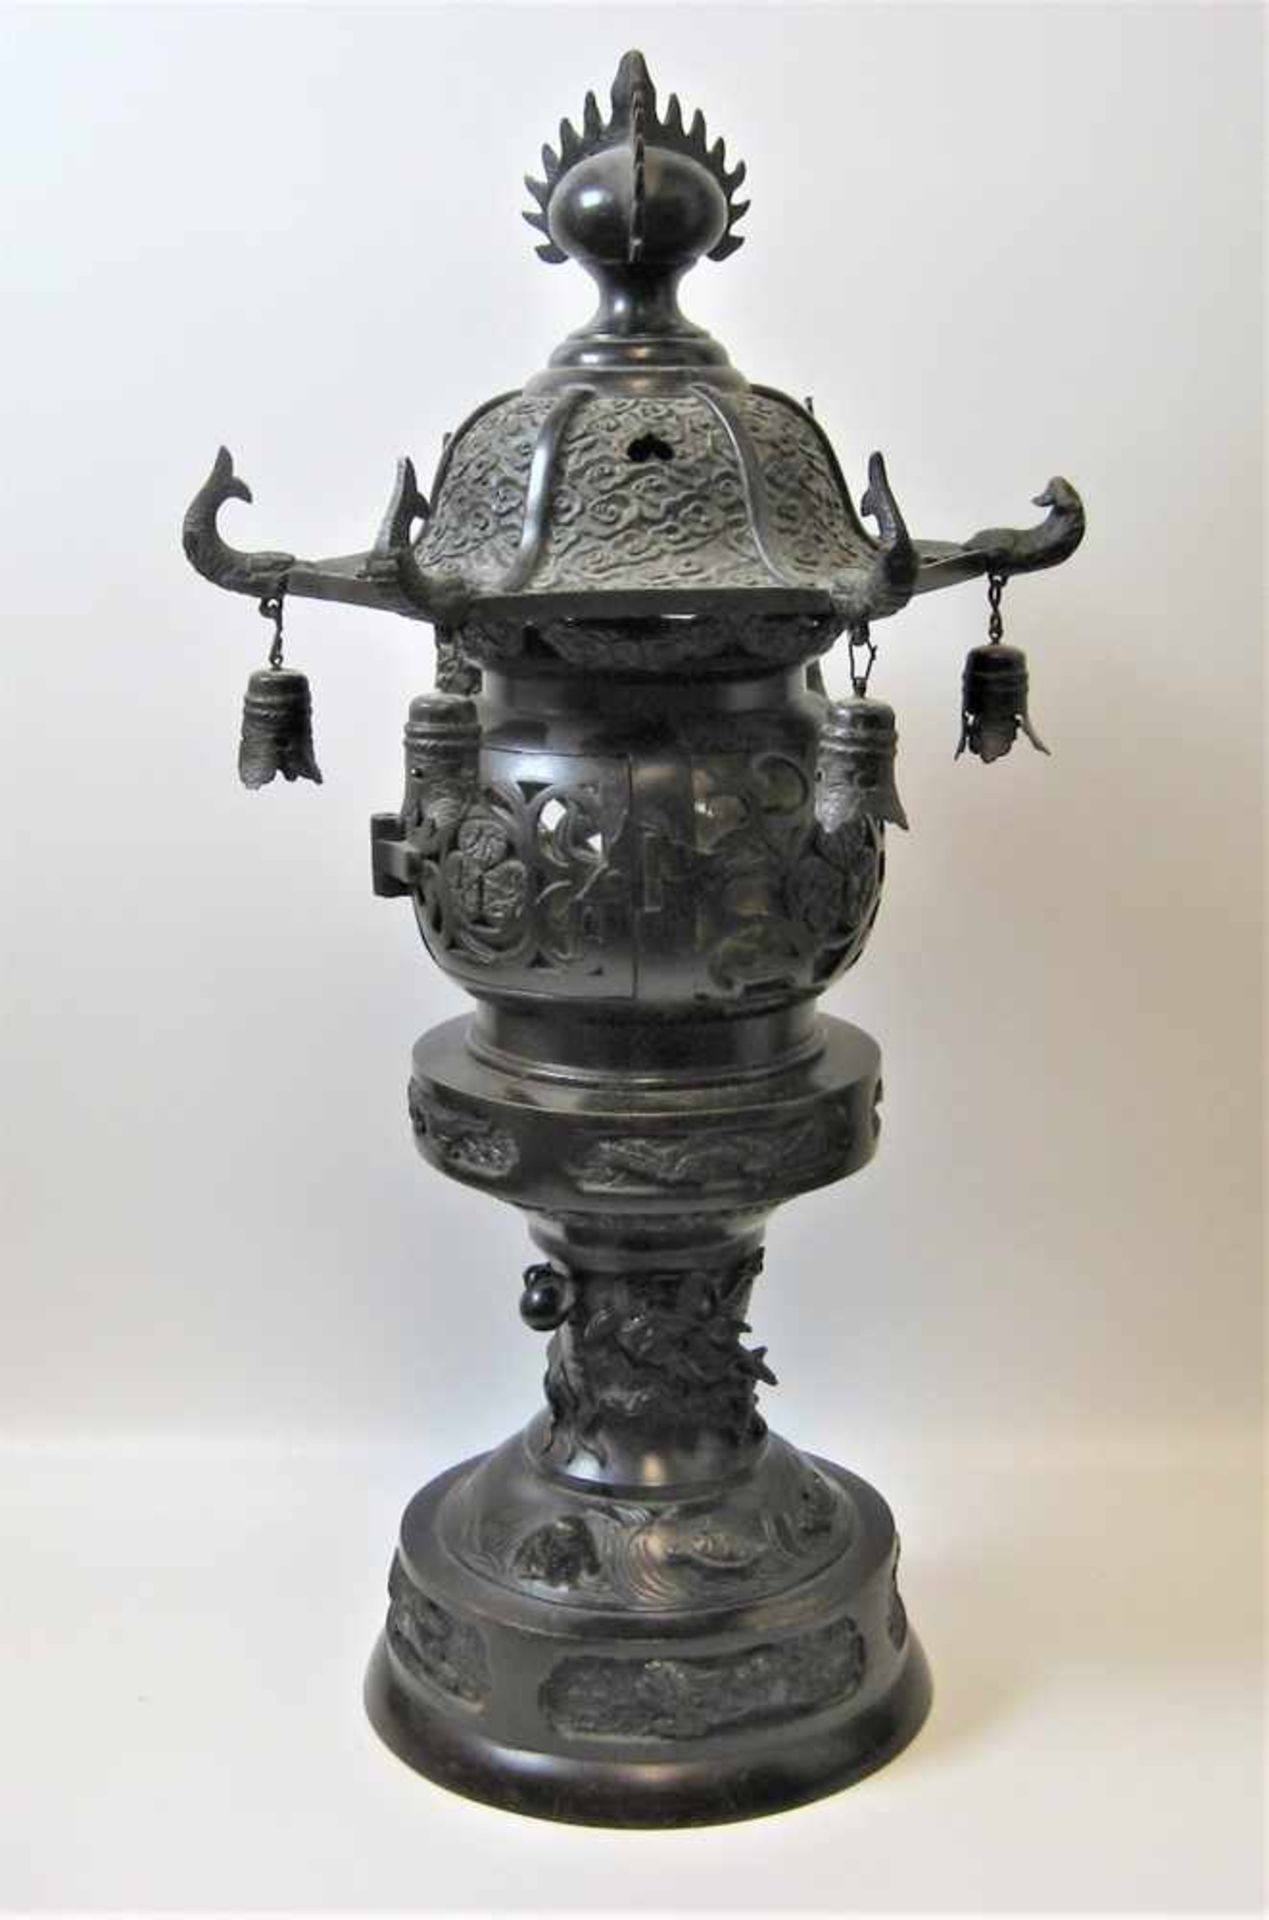 Lampe, China, um 1900, Bronze reich verziert, h 48 cm, d 24,5 cm.- - -19.00 % buyer's premium on the